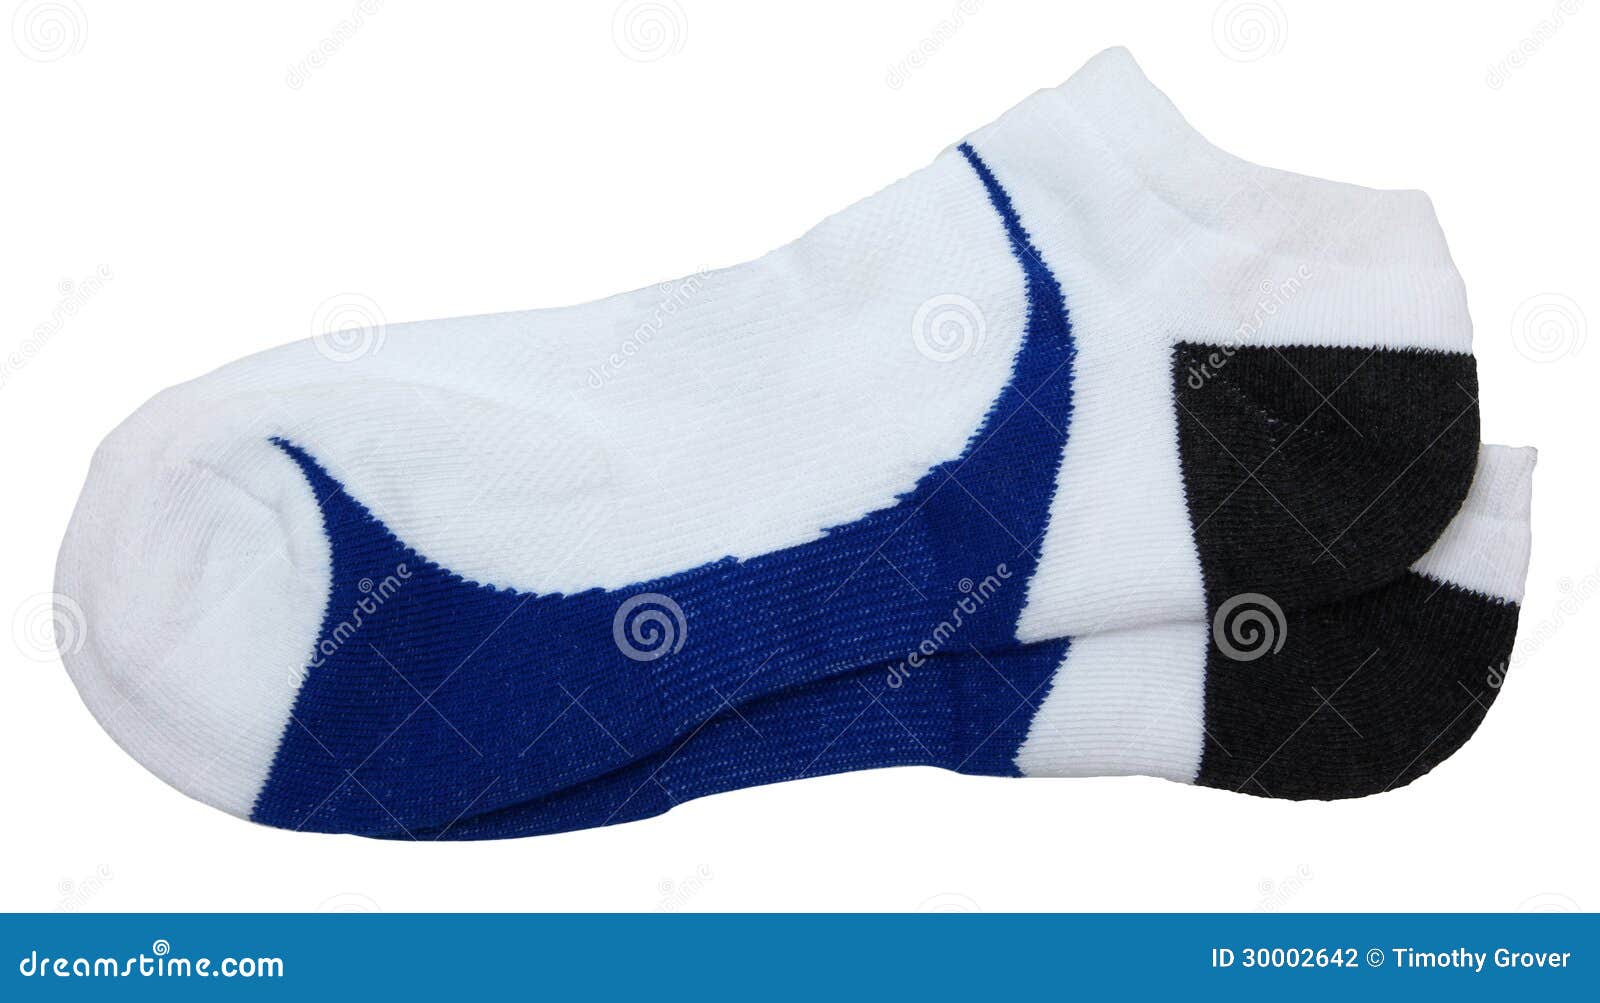 Isolated Athletic Socks stock photo. Image of athletic - 30002642